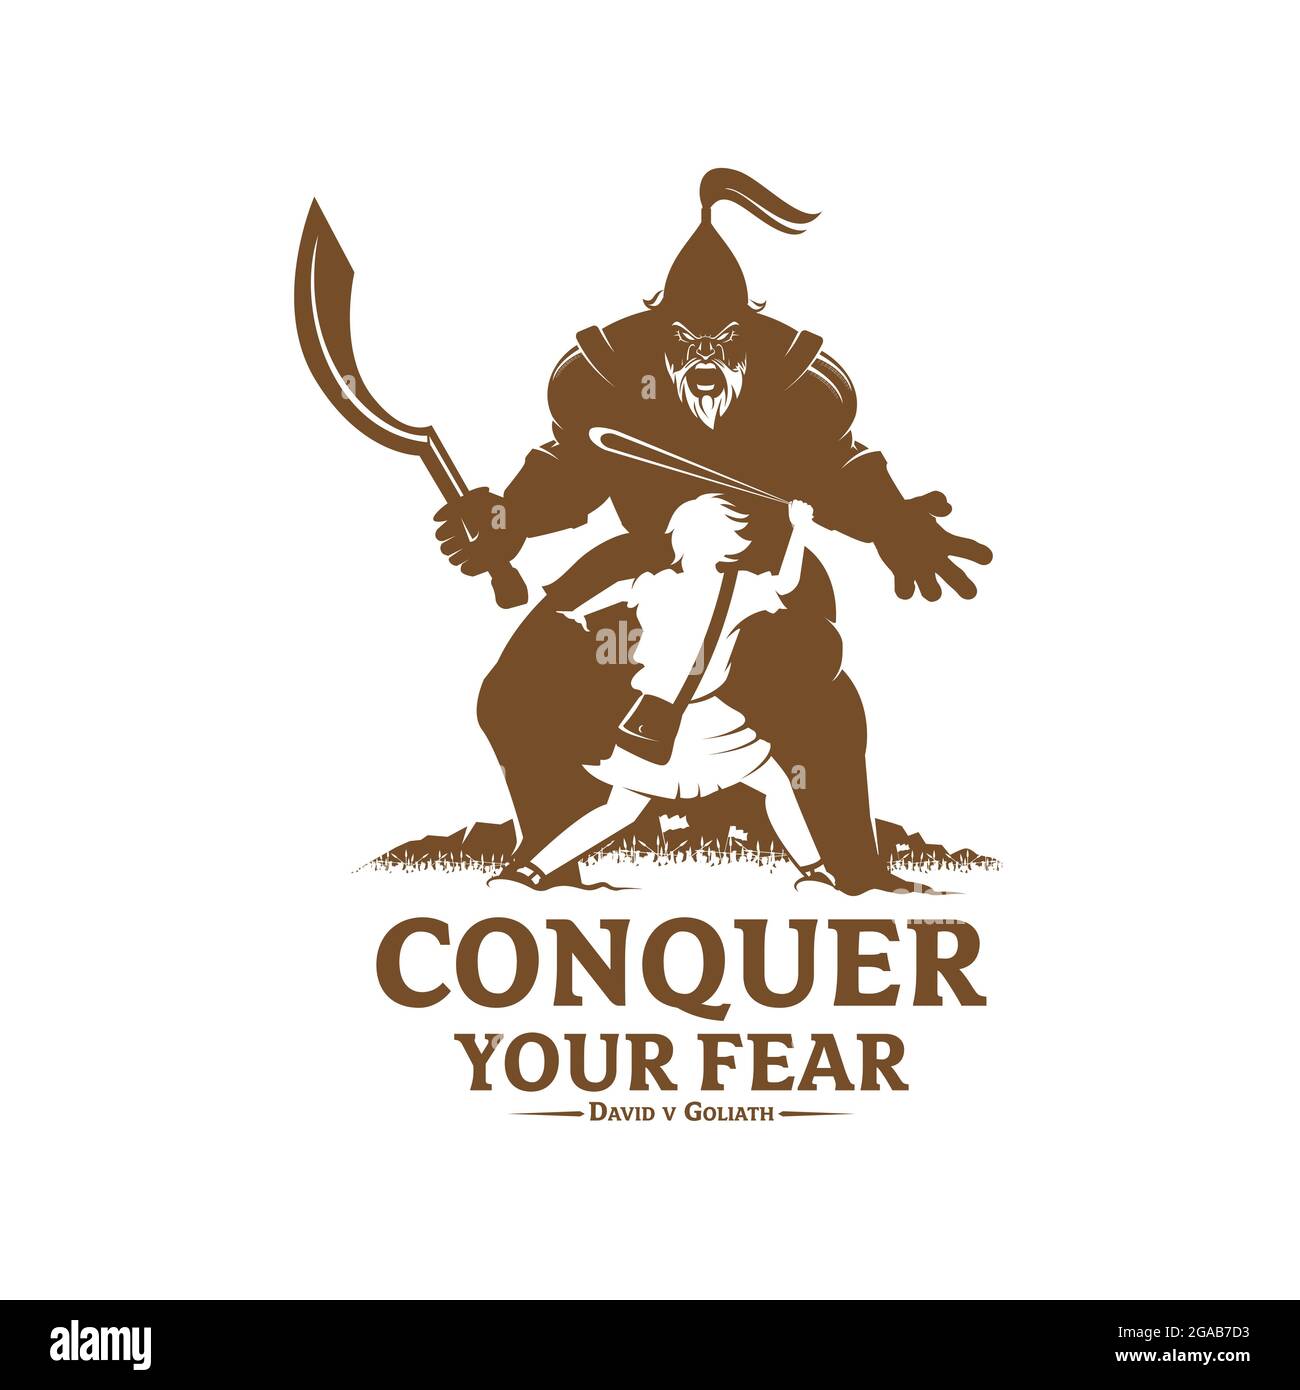 Conquer Your Fear David und Goliath Konzept Vektor Illustration monochrome Version für Logo T-Shirt-Design oder einem anderen Zweck Stock Vektor